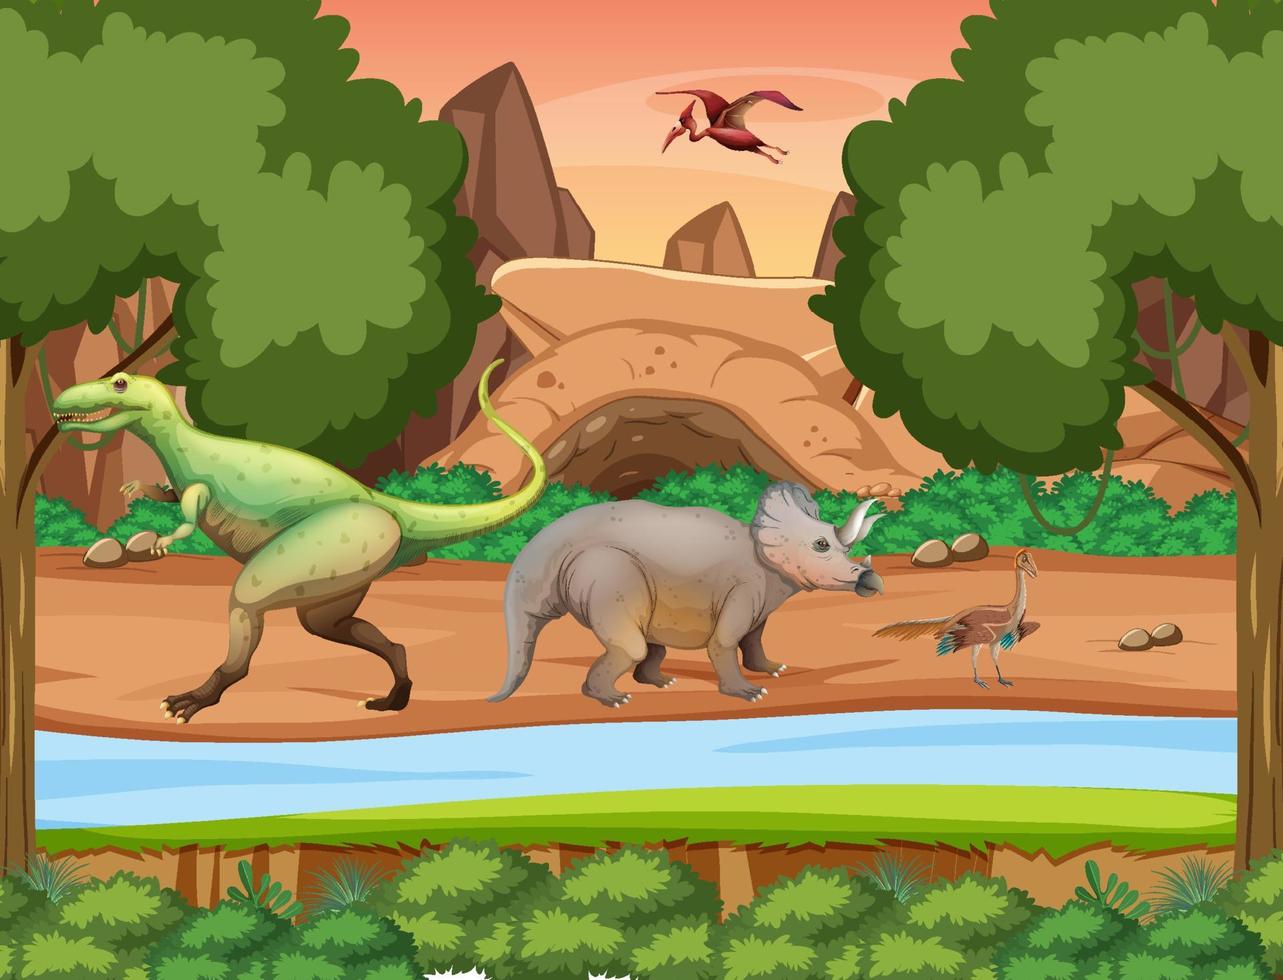 scen med dinosaurier i skogen vektor